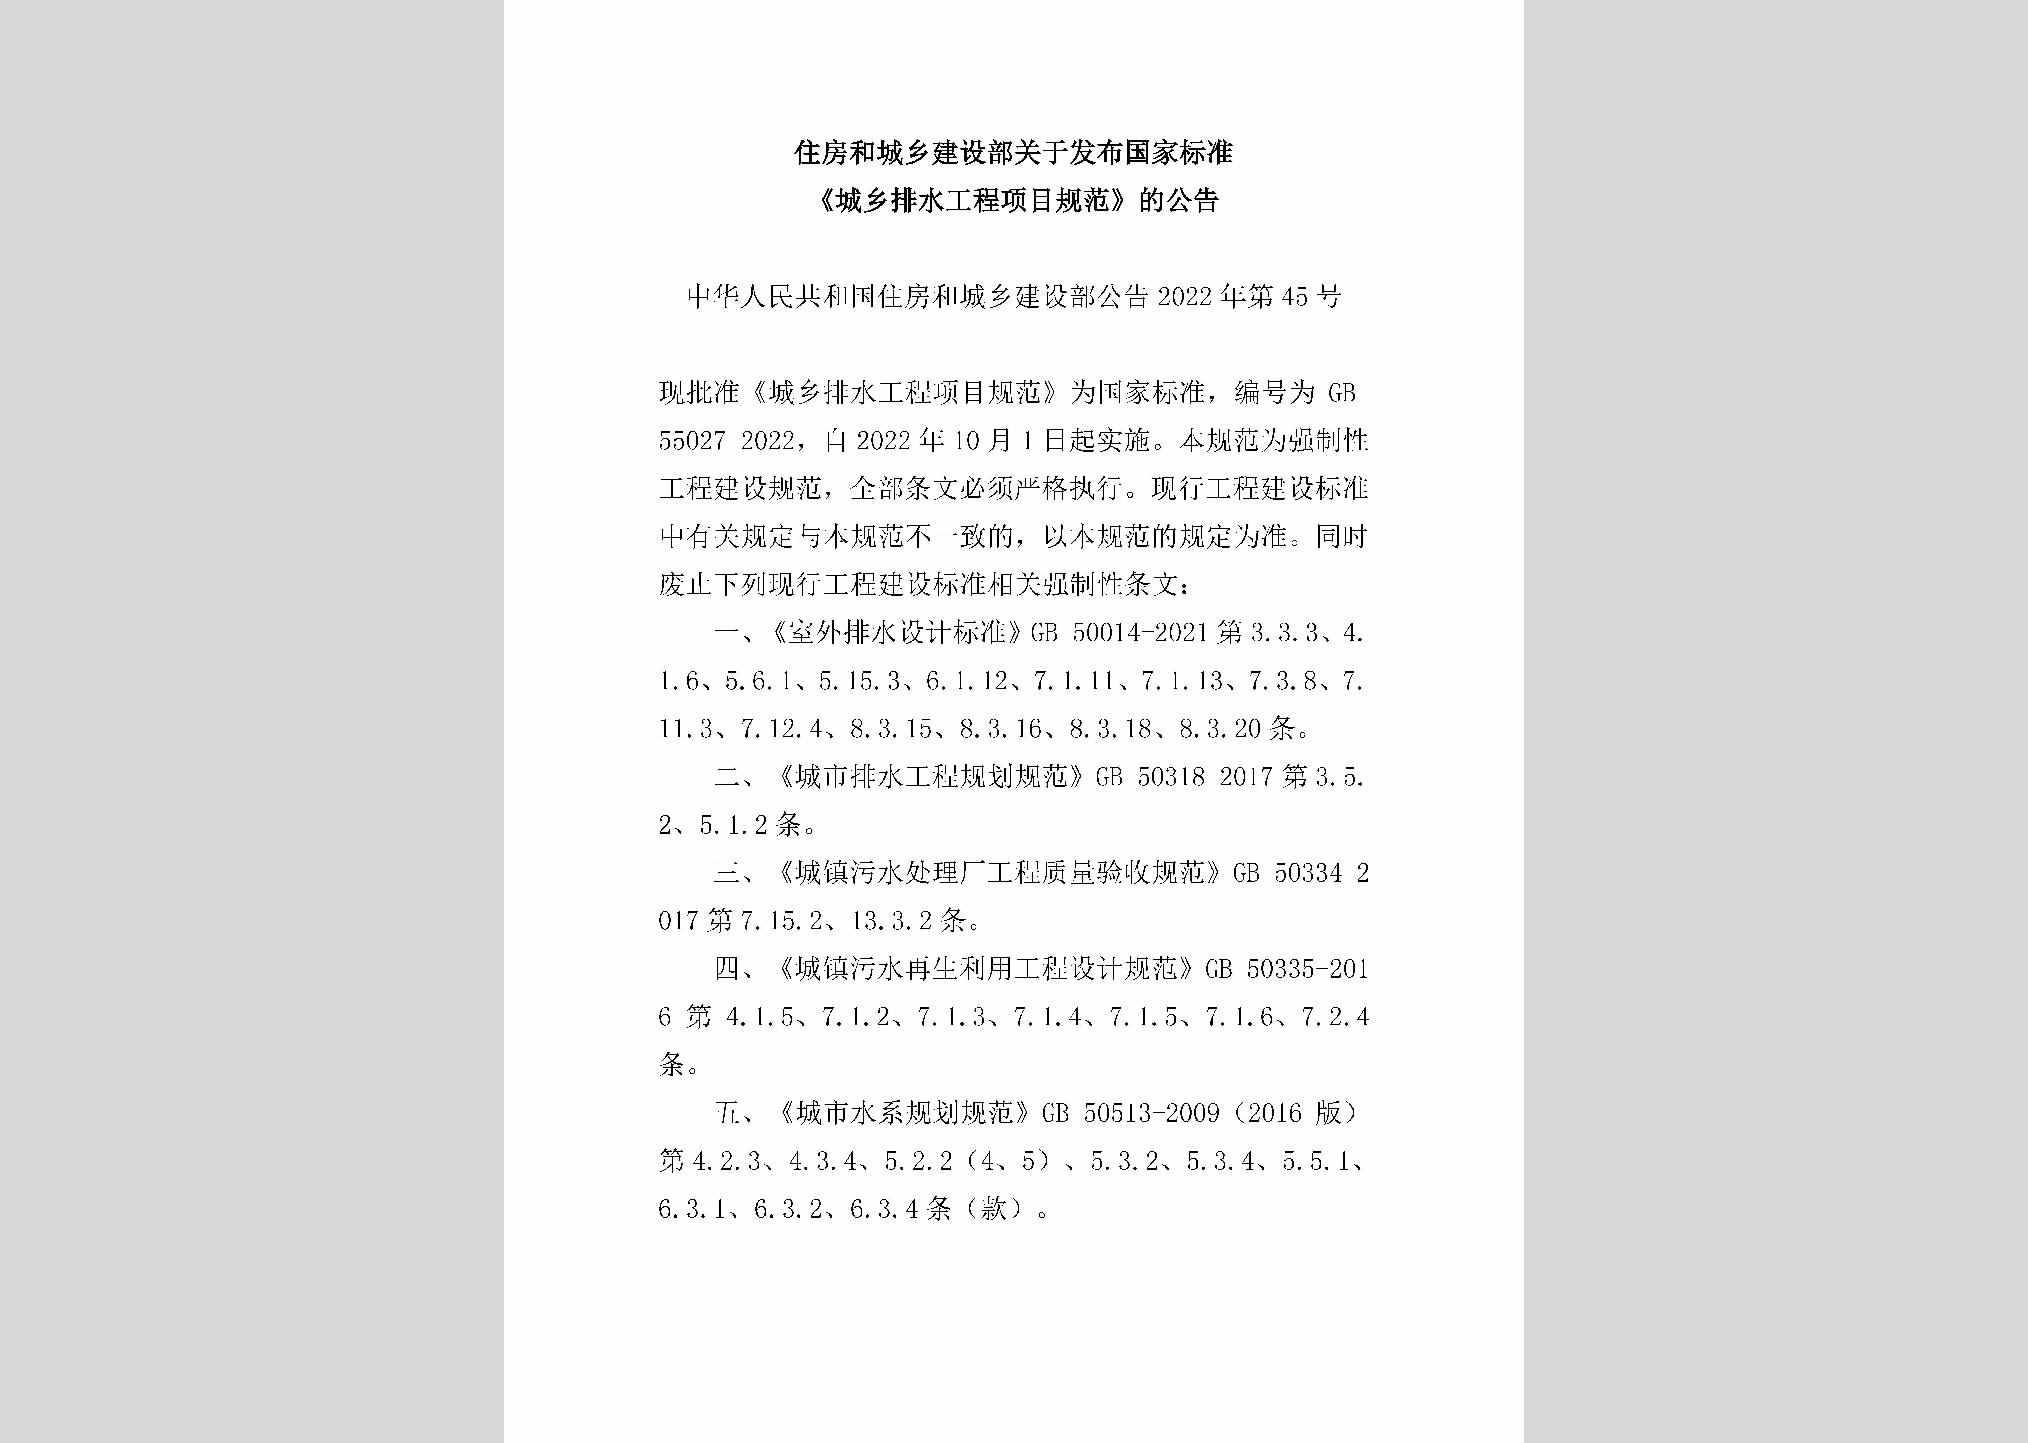 中华人民共和国住房和城乡建设部公告2022年第45号：住房和城乡建设部关于发布国家标准《城乡排水工程项目规范》的公告